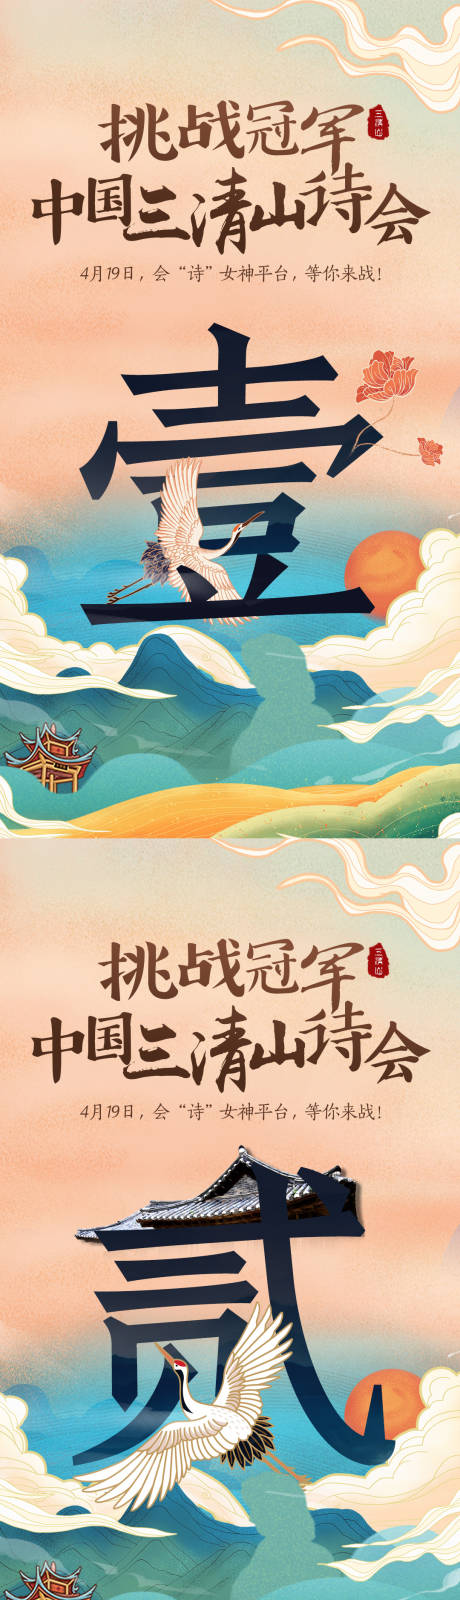 三清山旅游风景手绘倒计时海报